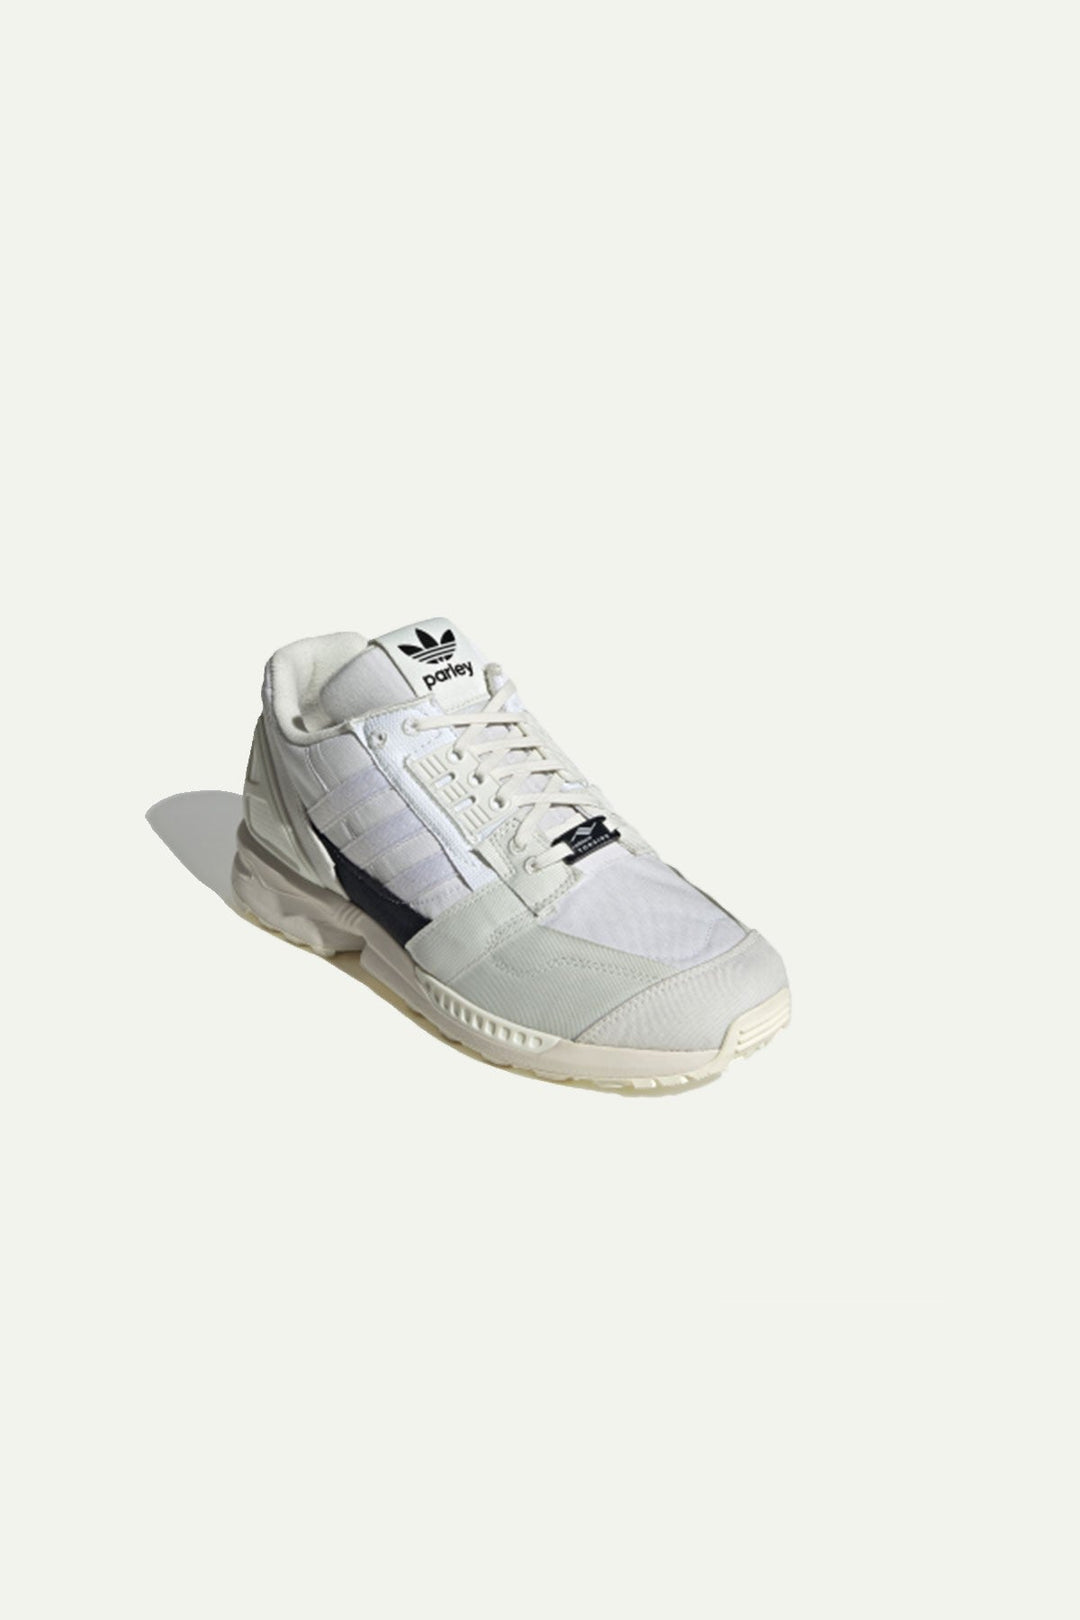 נעלי ZX 8000 Parley בצבע לבן - Adidas